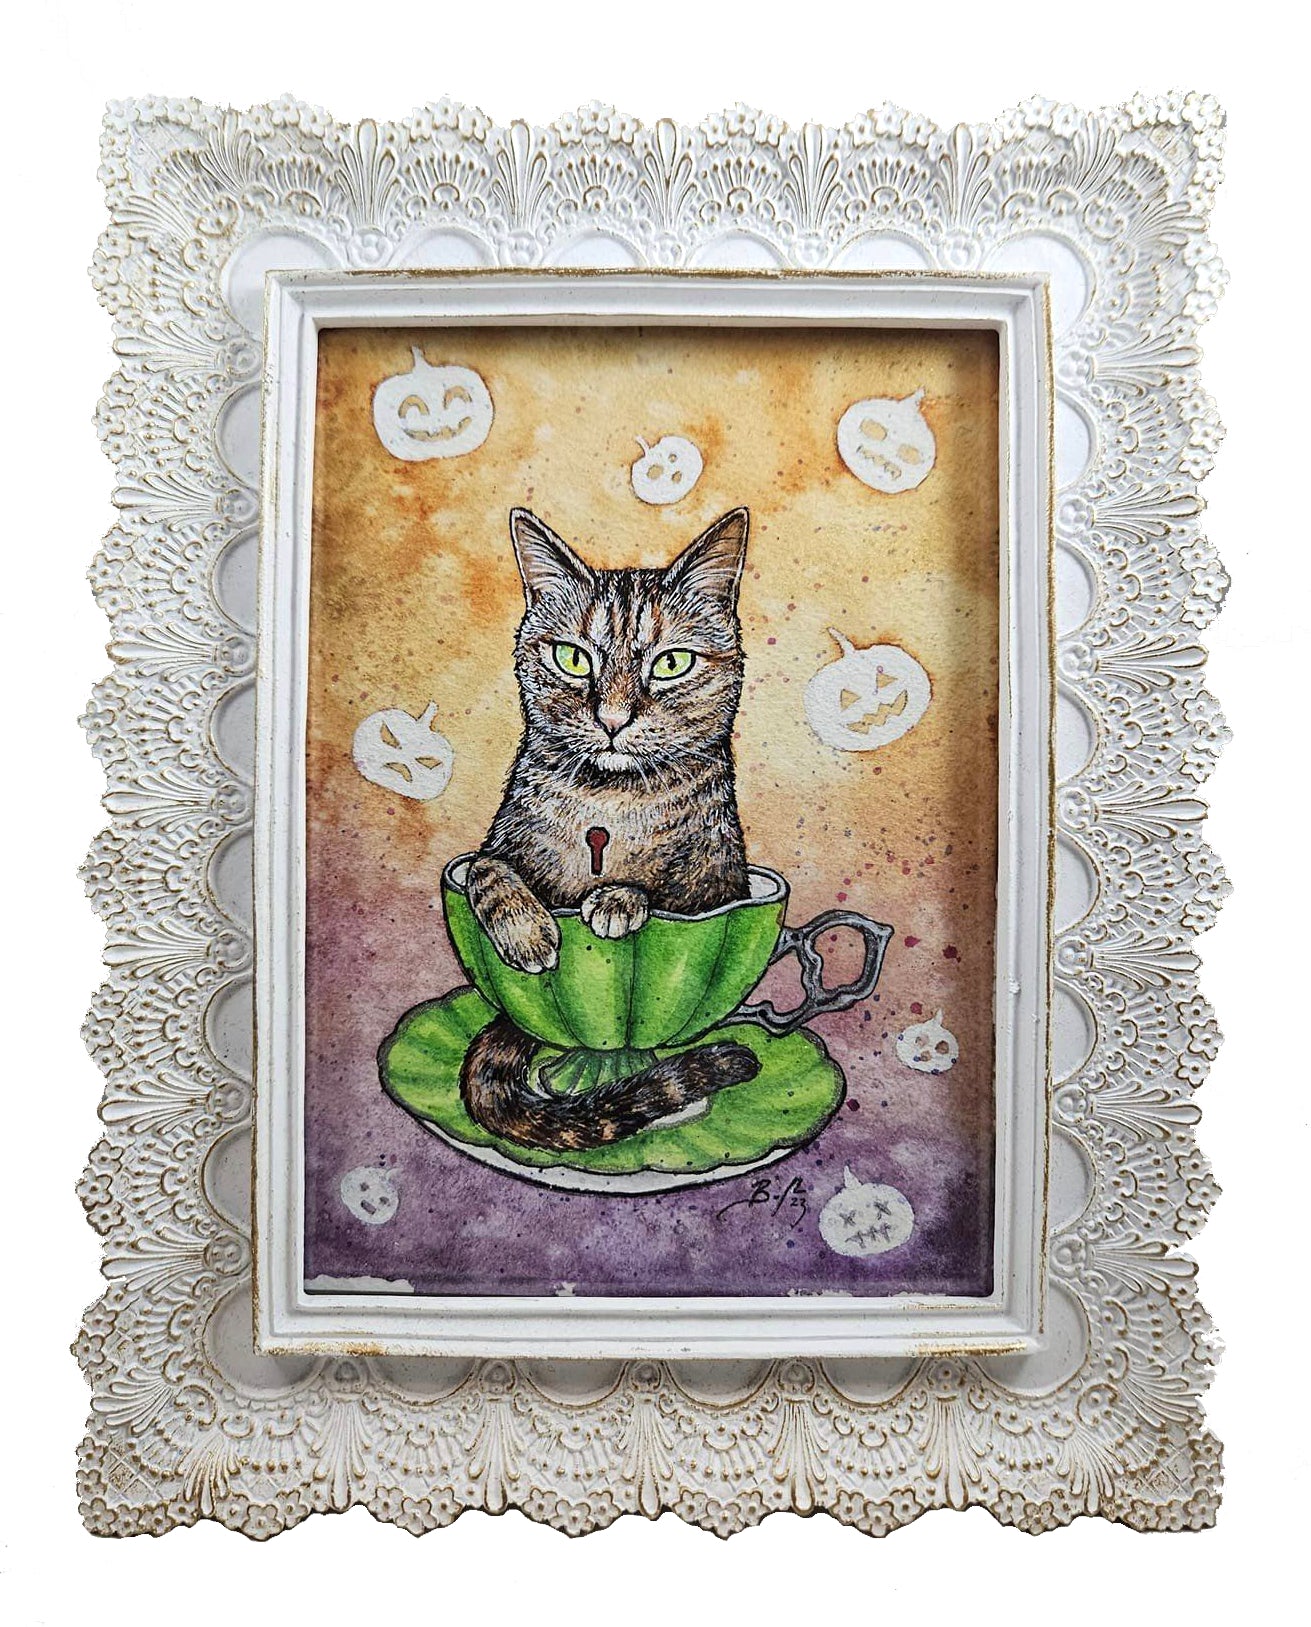 Original Art- Teacup Kitten: Pu'erh with Pumpkins